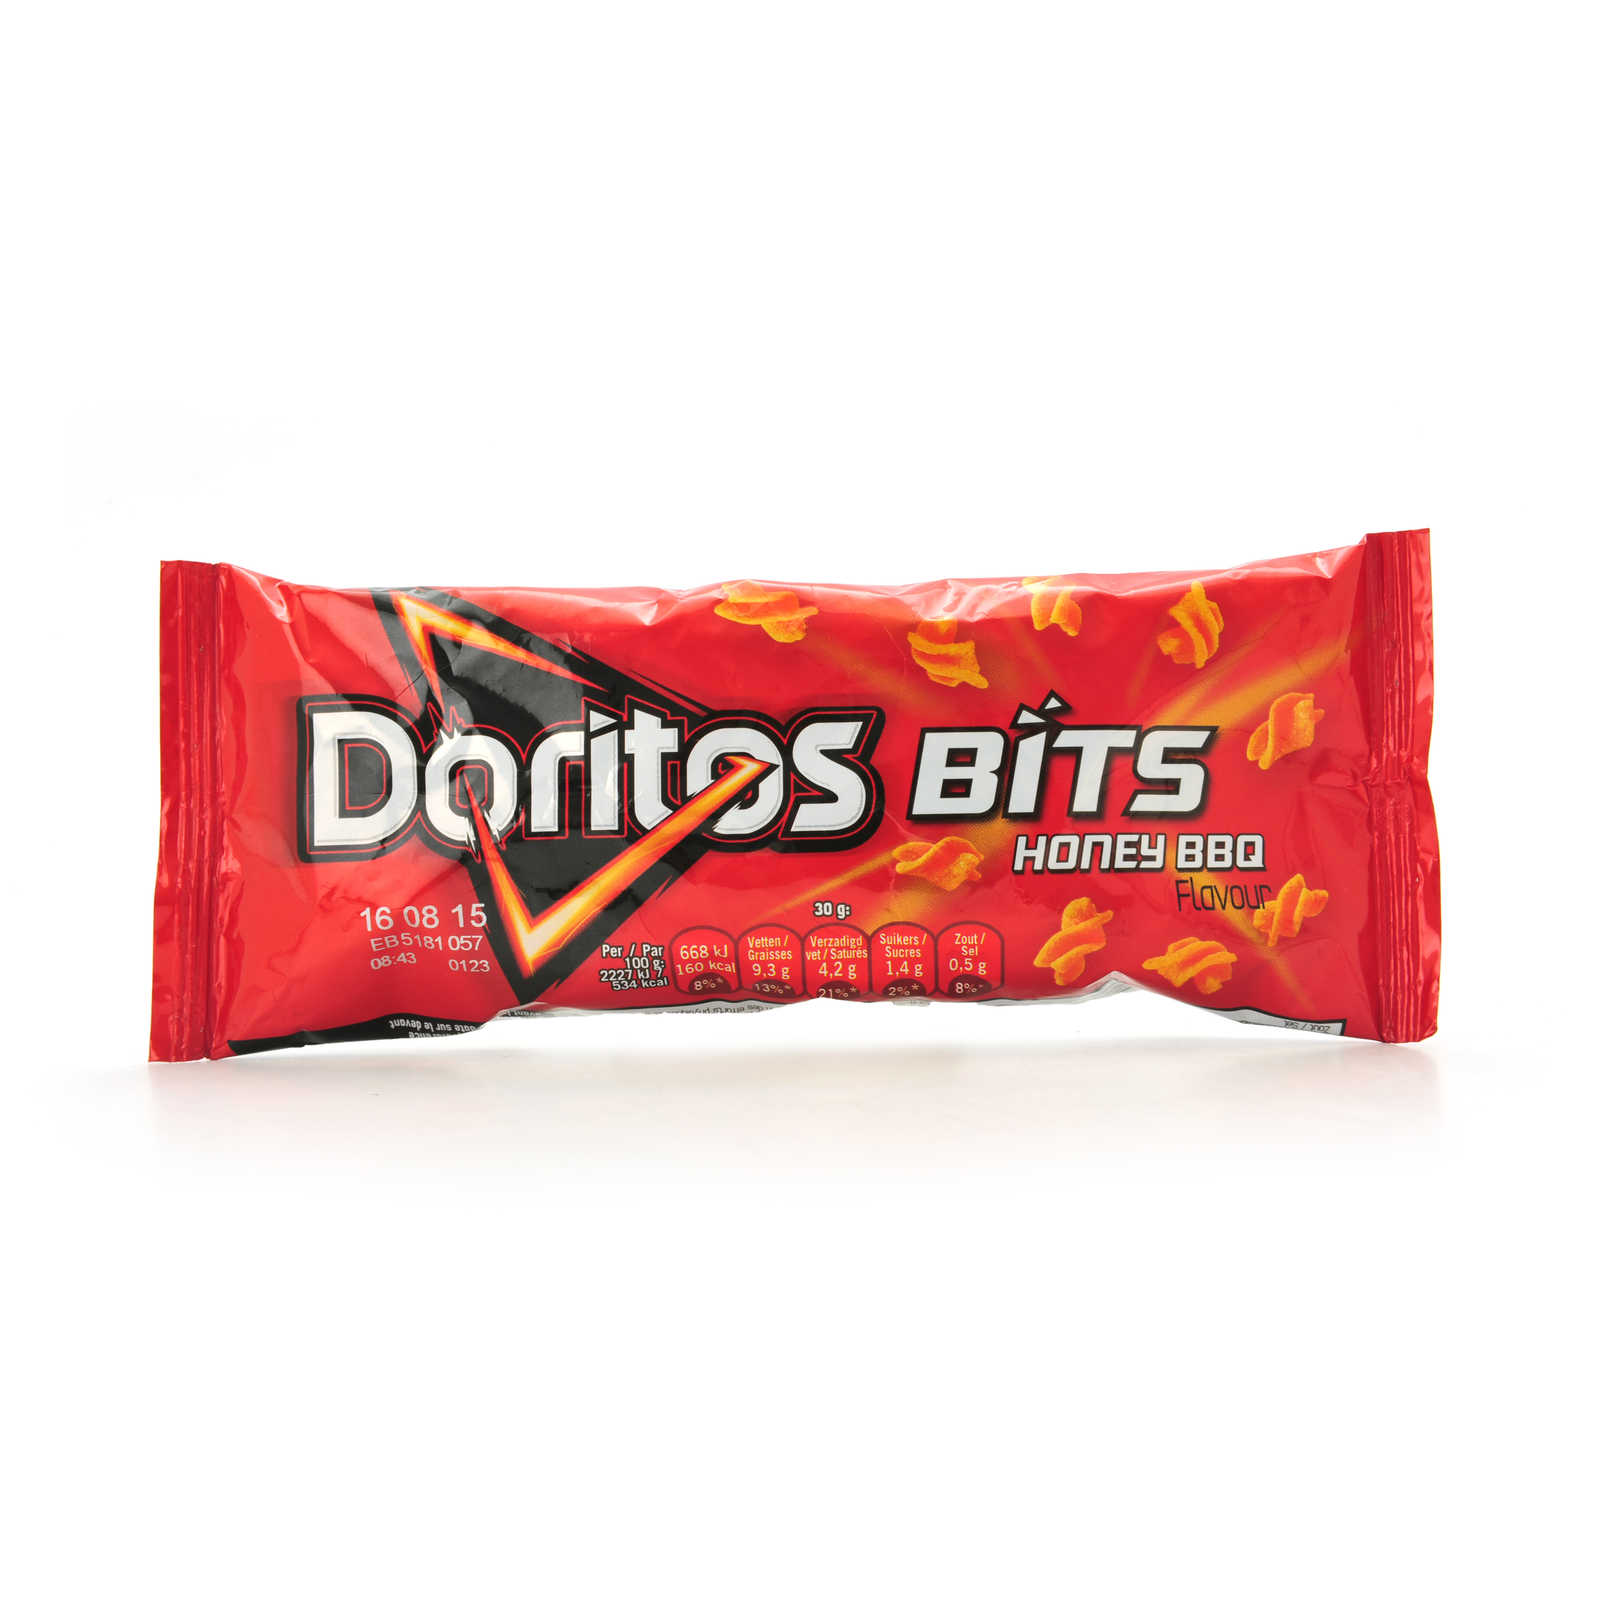 Doritos-Bits